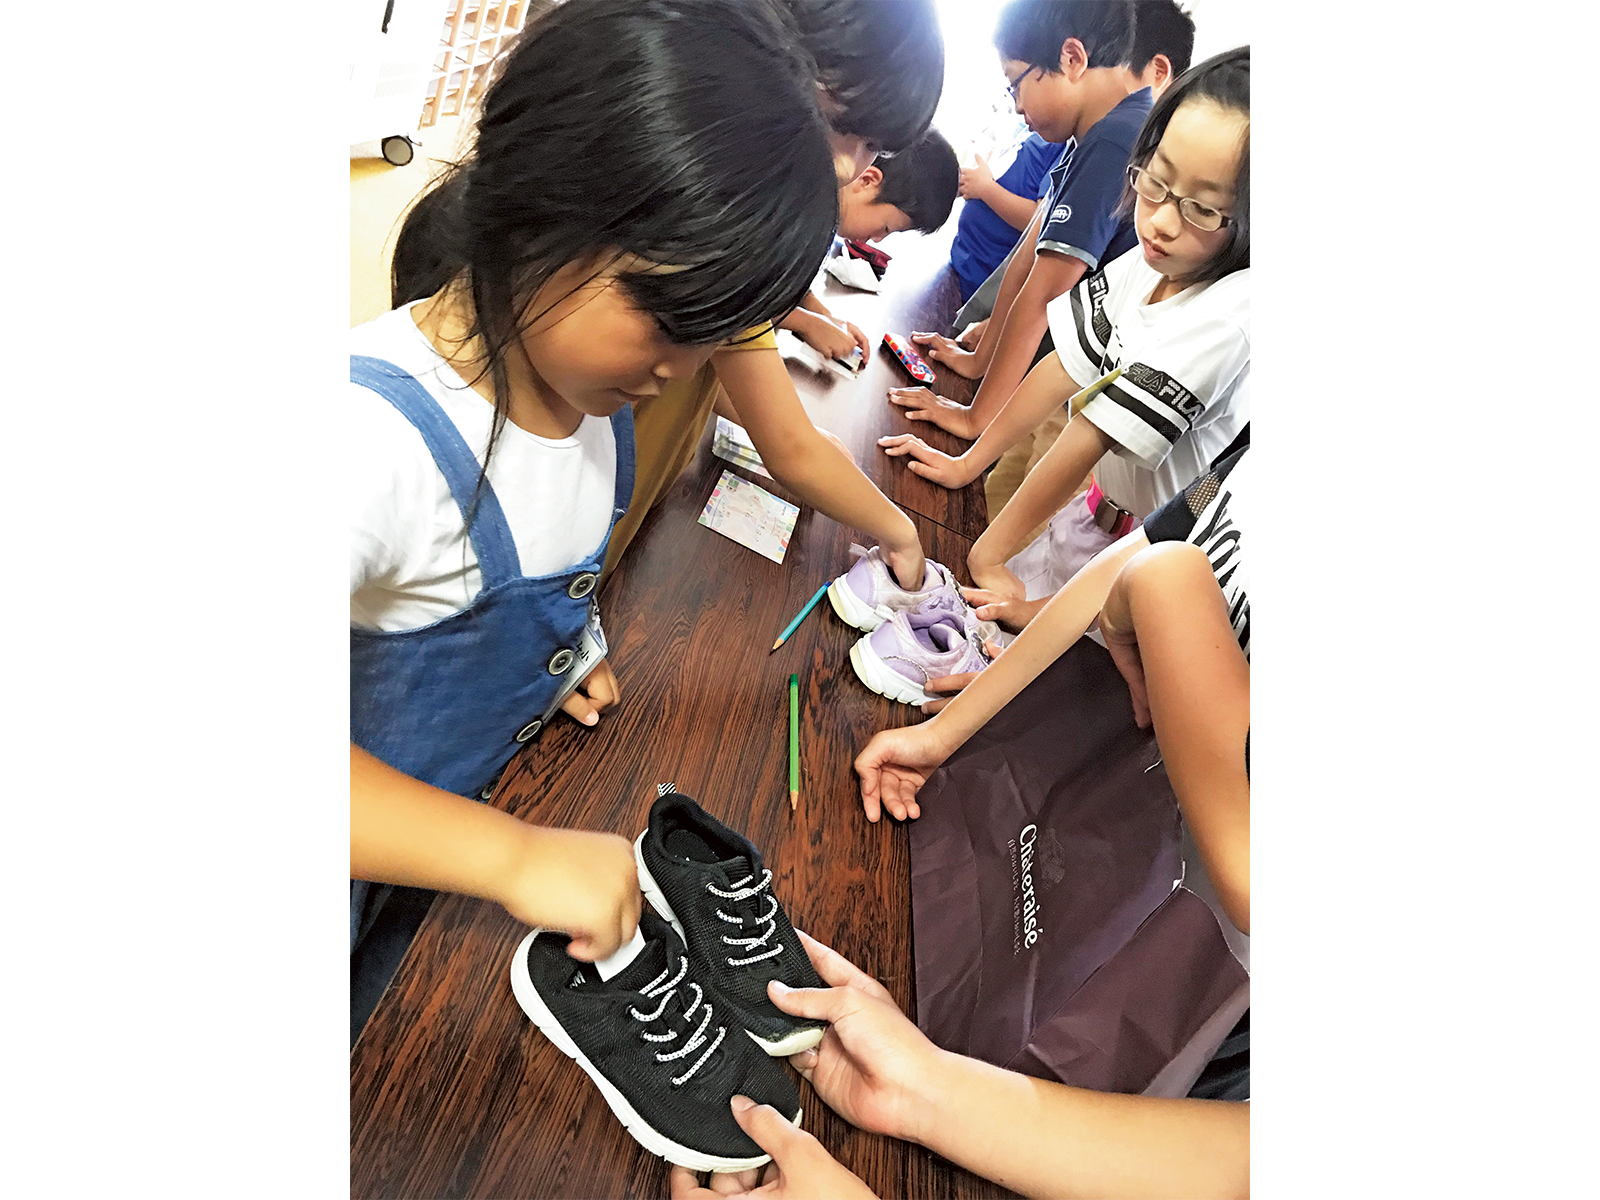 熊本市立黒髪小学校で行われたシューズ回収活動。児童数358人の学校で、外国籍の児童も多く、多様な国の児童同士、仲良く学んでいるという。環境教育にも力を入れている。